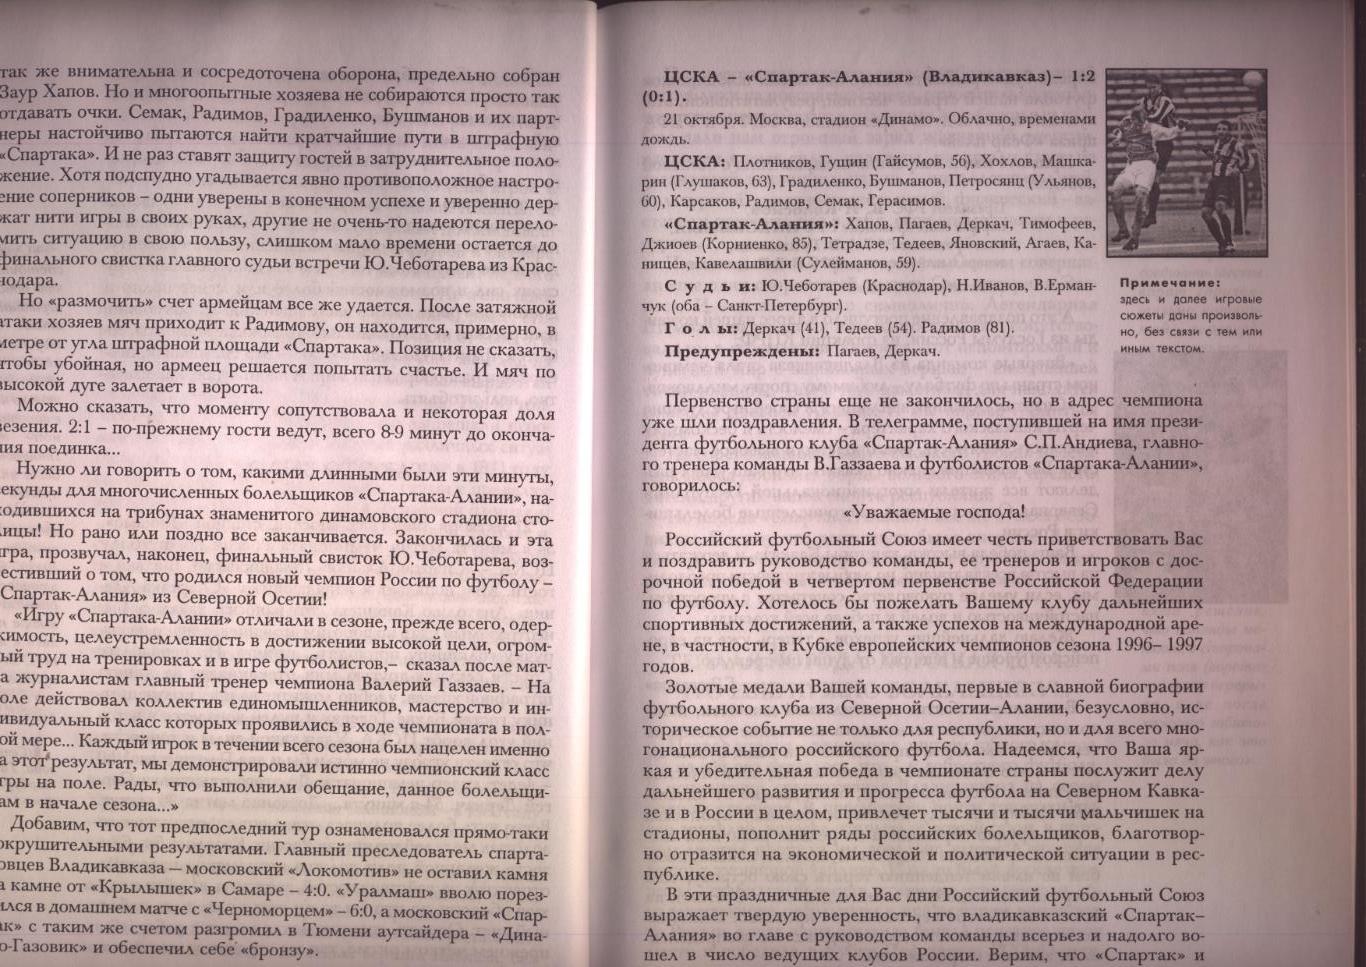 Книга футбол 1995 Спартак-Алания Путь к вершине Истоки Подробности см.в описании 6